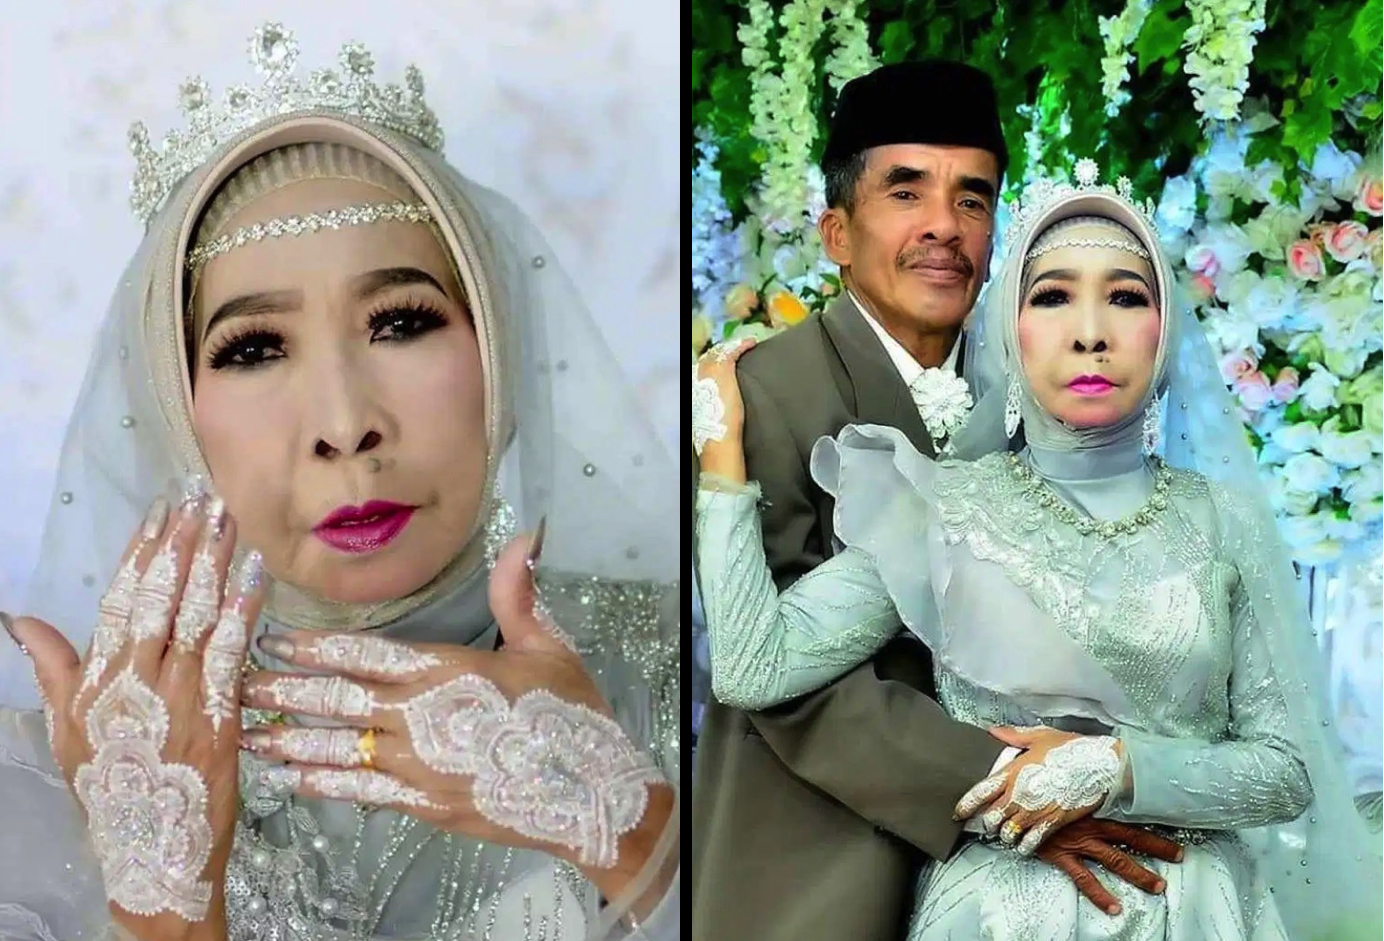 sajagempak.com - Menamatkan Zaman Bujang Di Usia 56 Tahun, Perkahwinan 'Nenek' Ini Disambut Penuh Meriah